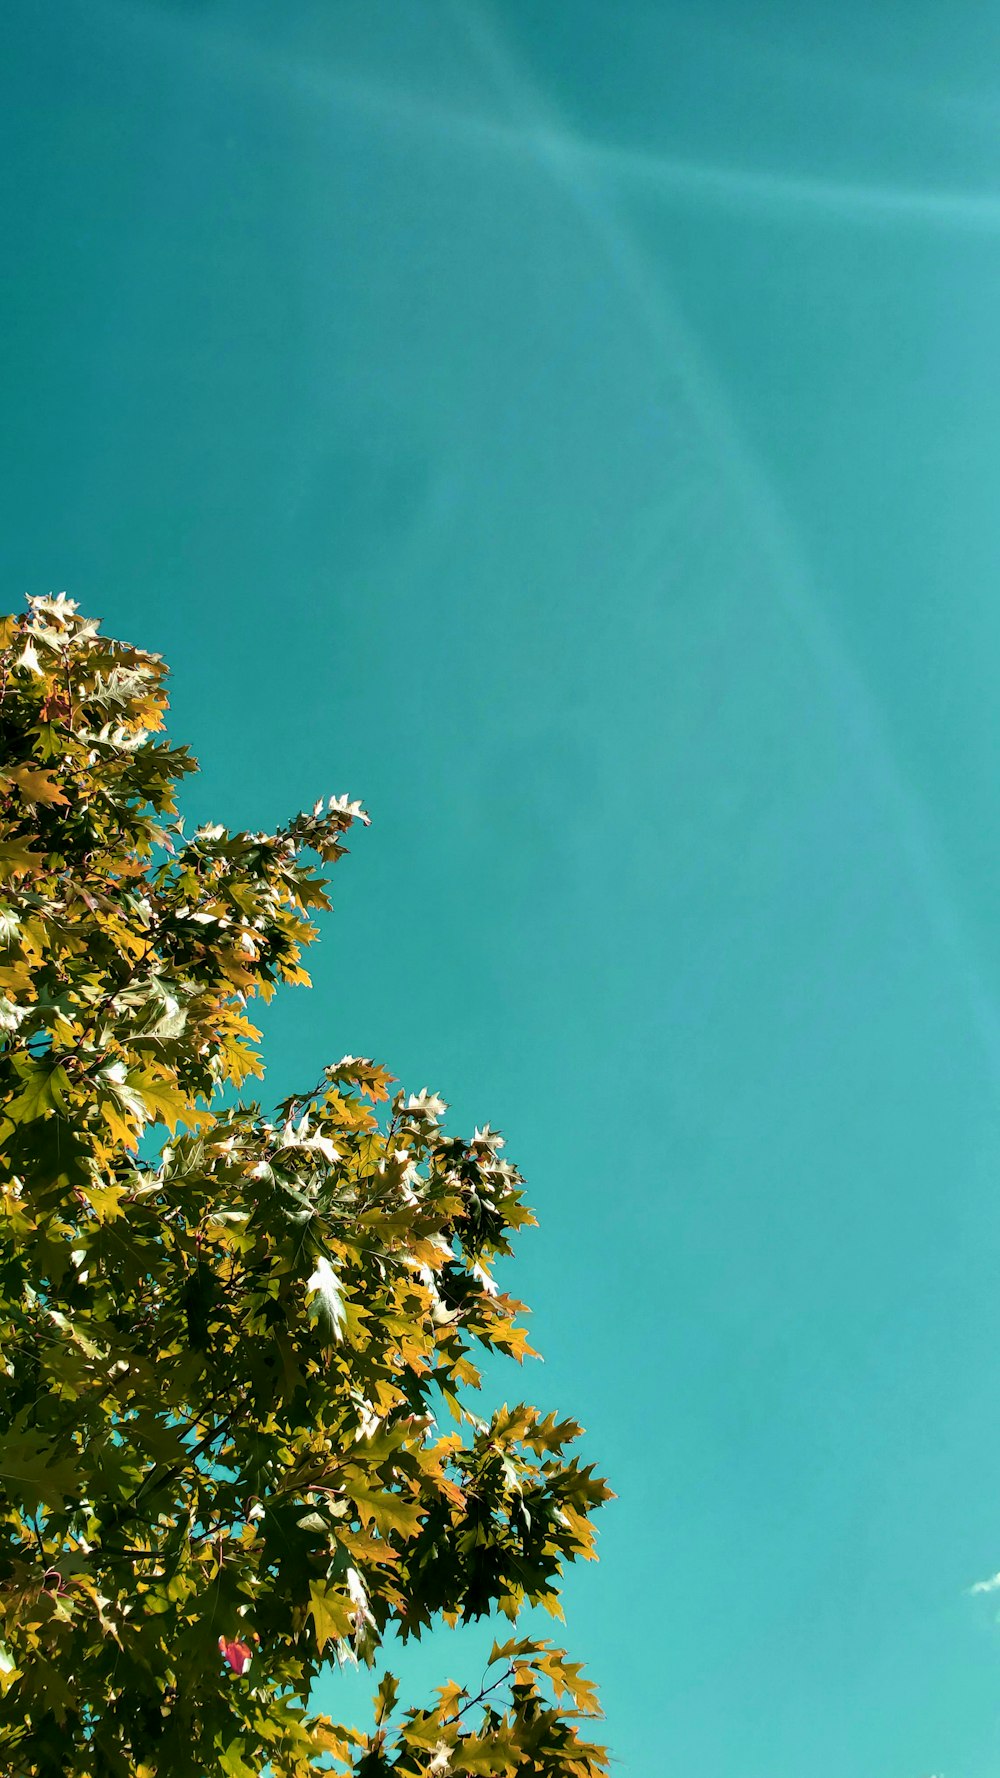 árbol verde y marrón bajo el cielo azul durante el día